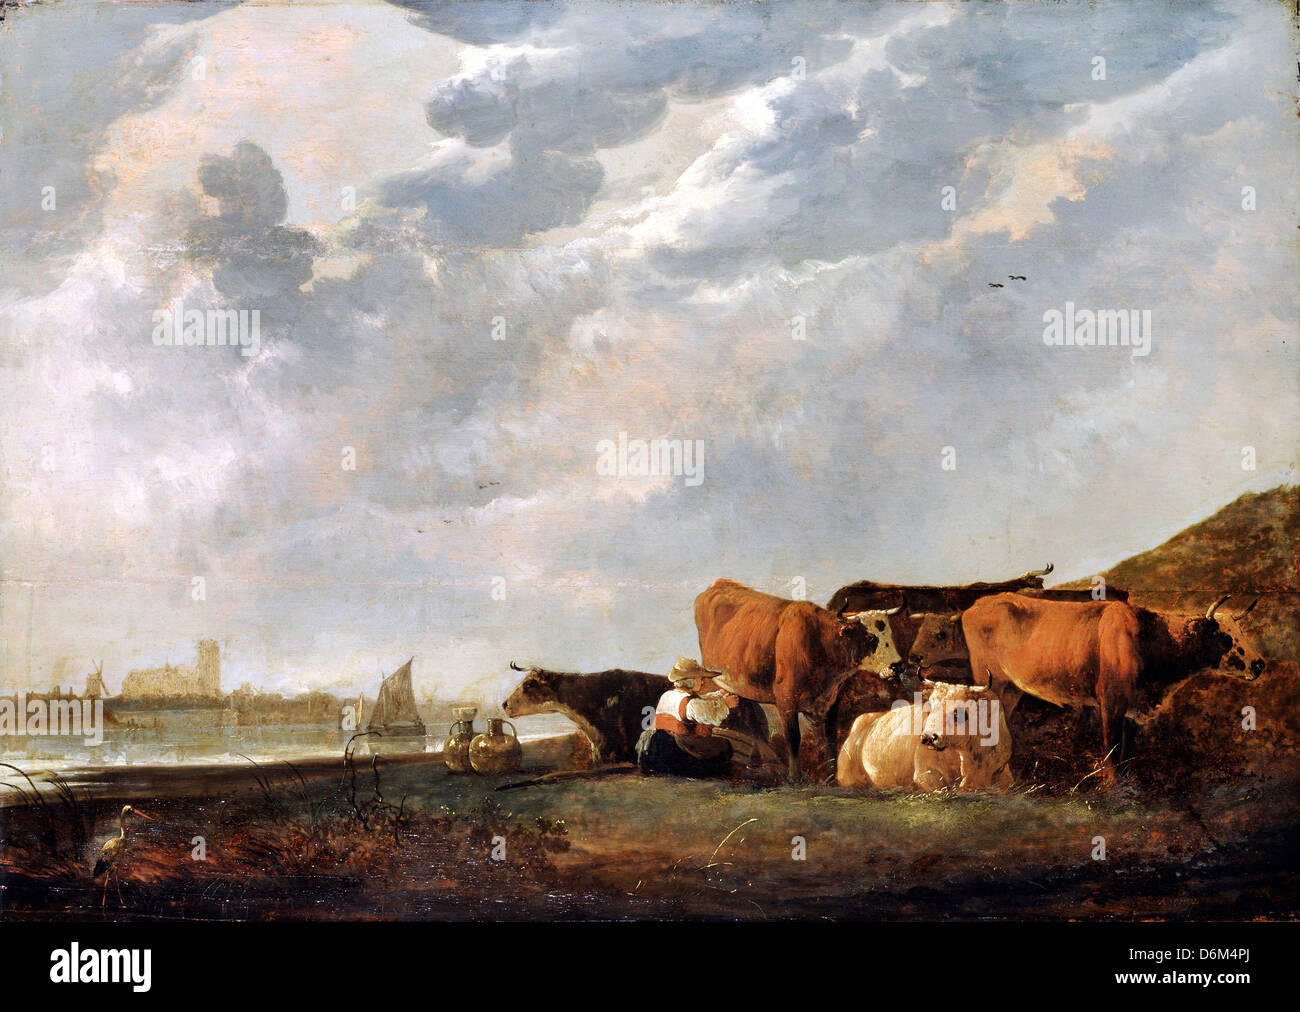 Aelbert Cuyp, Rinder in der Nähe von der Maas, mit Dordrecht in der Ferne. 17. Jahrhundert. Öl auf Leinwand. Dulwich Picture Gallery, London Stockfoto